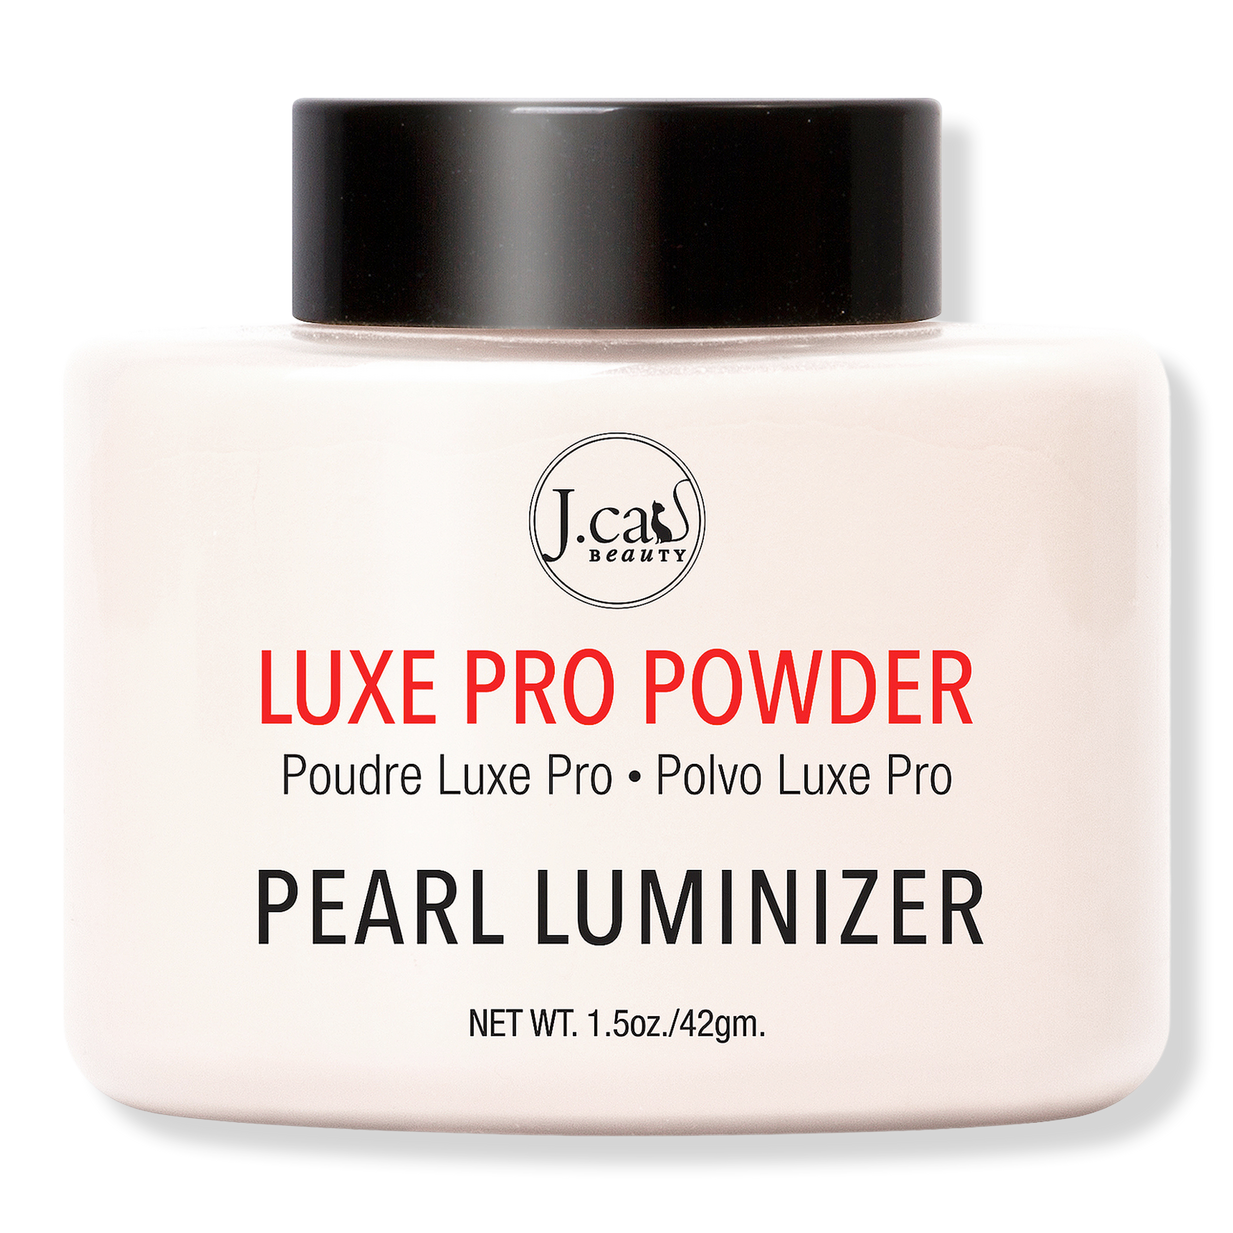 Luxe Pro Powder - J.Cat Beauty